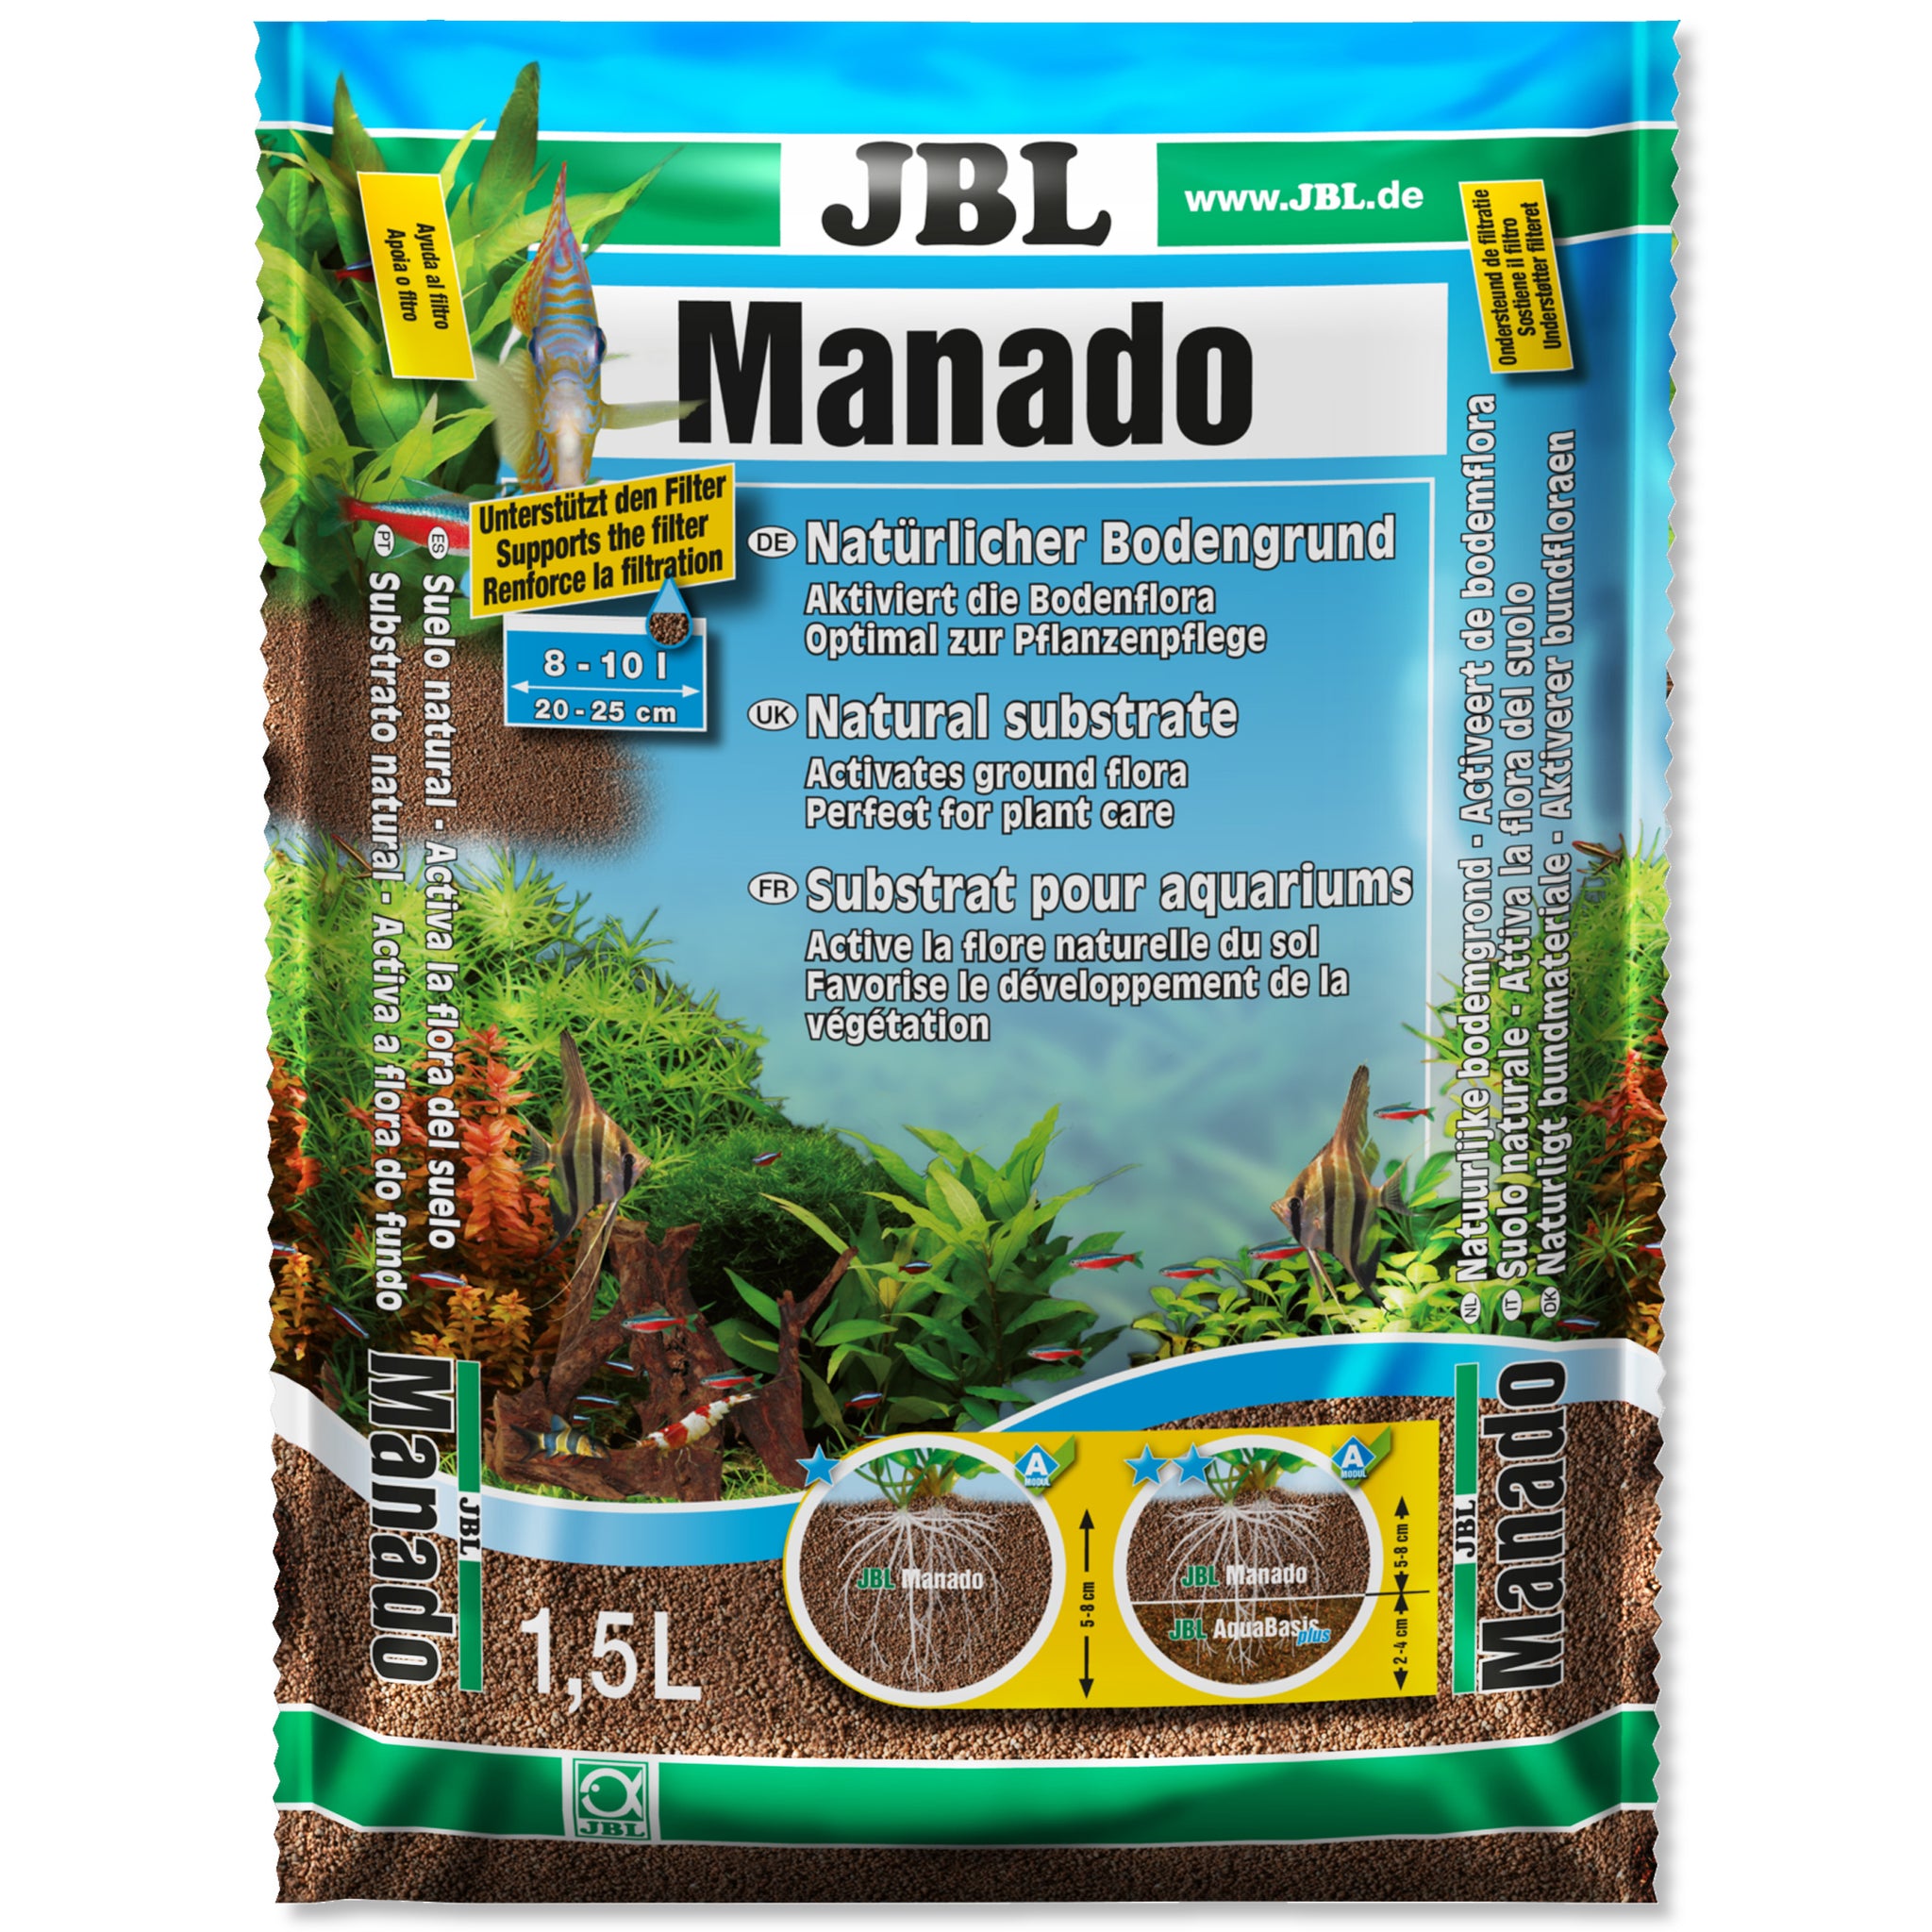 JBL Manado DARK 5 l, Dark natural substrate for aquariums : Buy